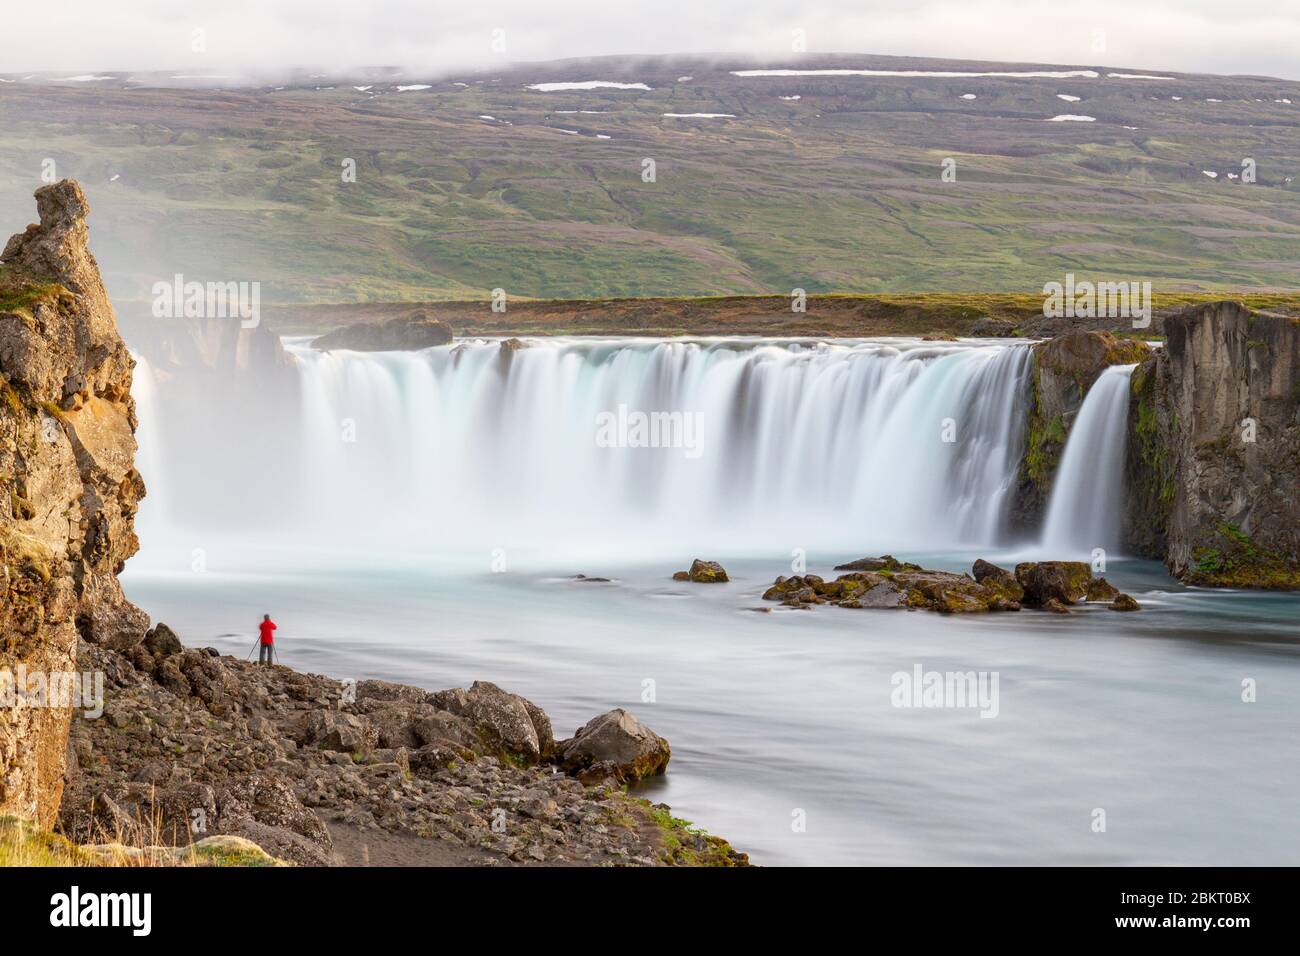 Langzeitbelichtung eines anderen Fotografen, der ein Foto des Goðafoss-Wasserfalls, eines 12 m hohen Sturzes über 30 m des Flusses Skjálfandafljót Island, machte. Stockfoto